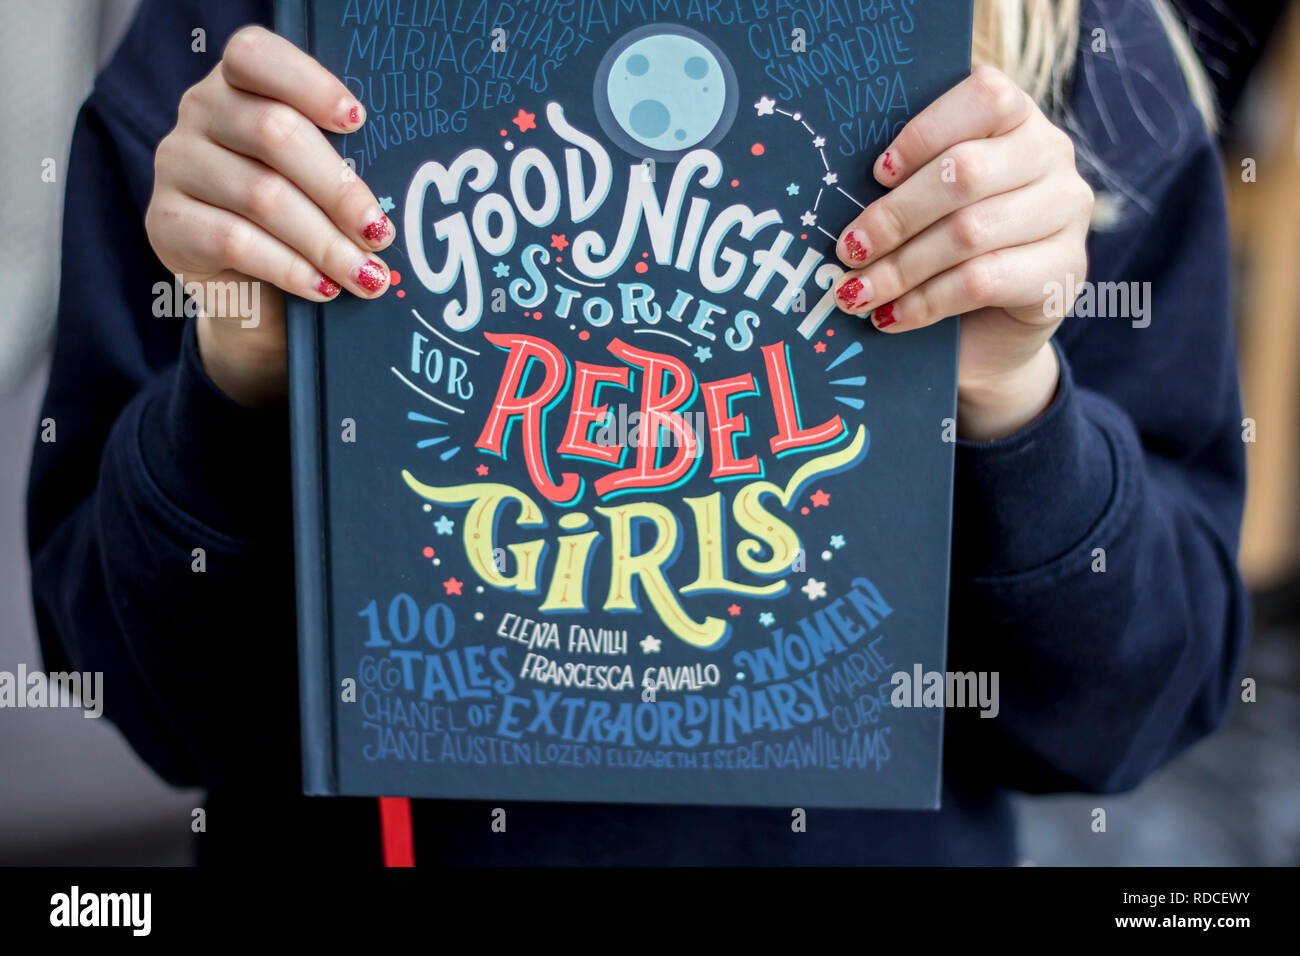 Good night stories for Rebel Girls, kids books, childrens books, reading book, feminism concept, feminist, girl books tween read educate education Stock Photo